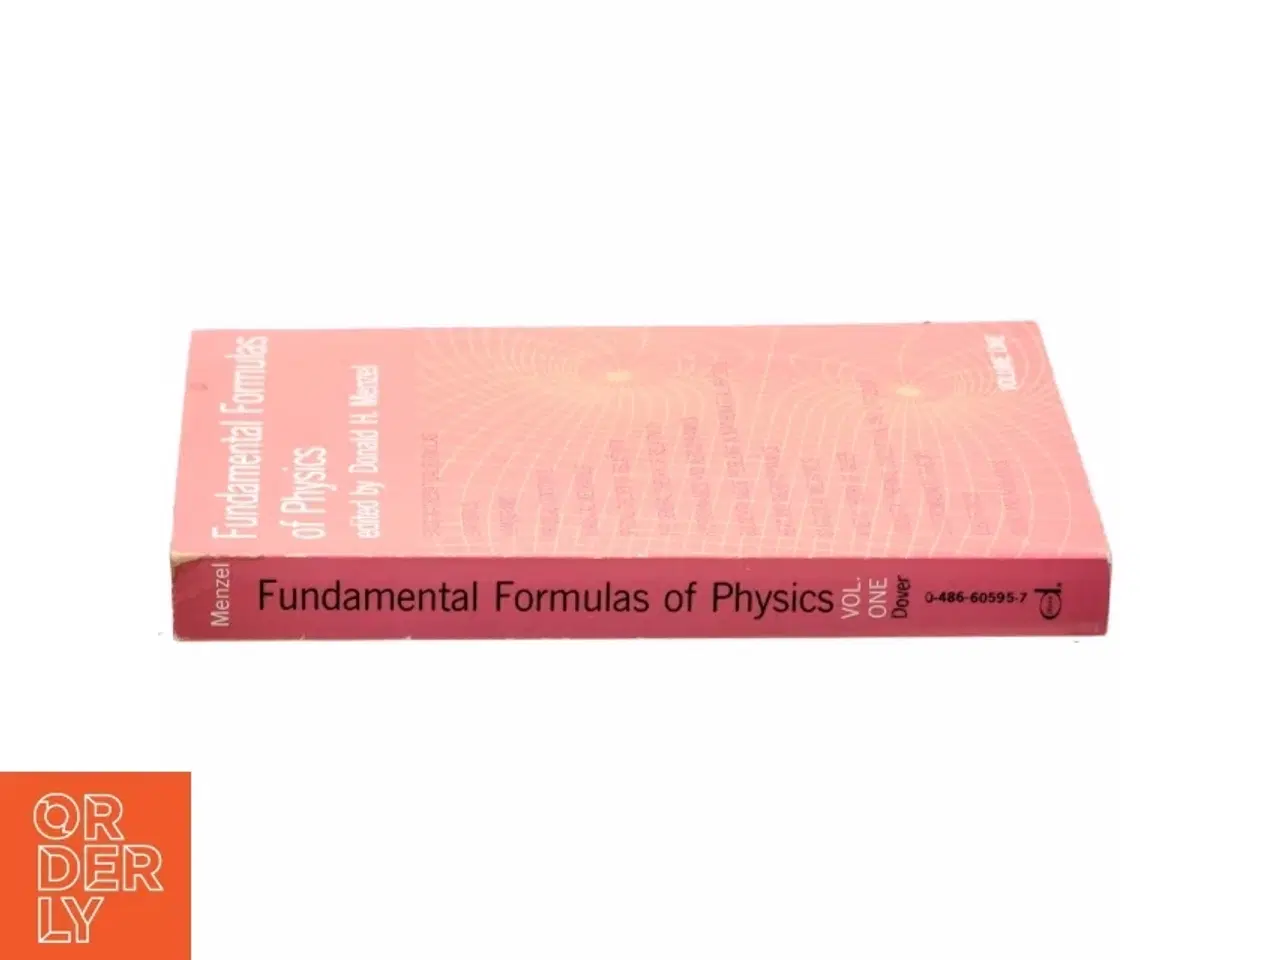 Billede 2 - Fundamental formulas of physics af Donald H. Menzel (Bog)